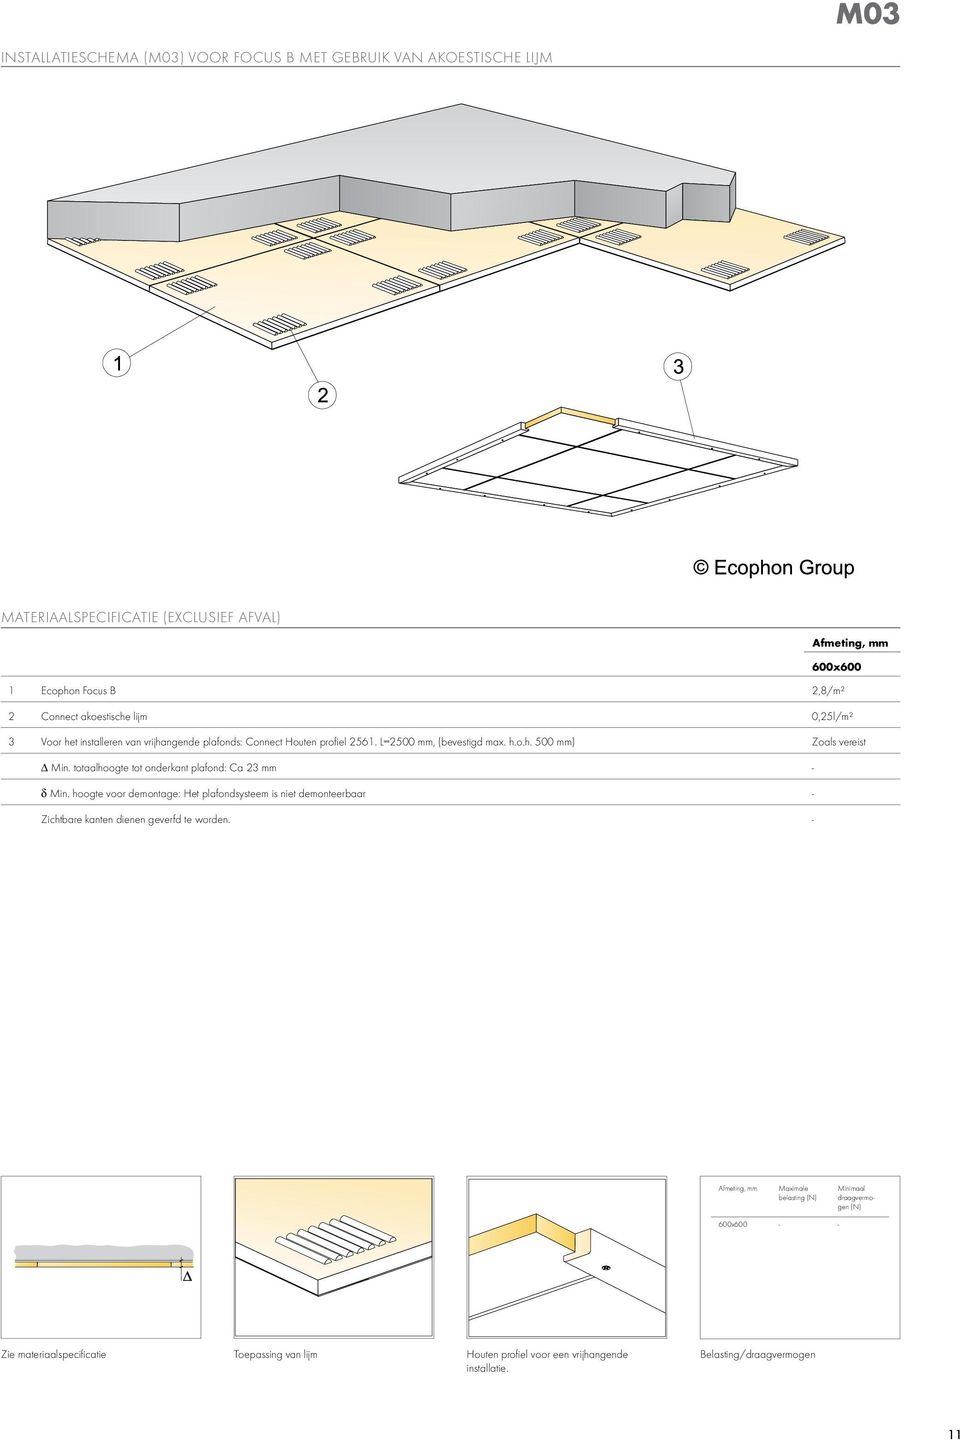 totaalhoogte tot onderkant plafond: ca 23 mm - δ min. hoogte voor demontage: het plafondsysteem is niet demonteerbaar - Zichtbare kanten dienen geverfd te worden.